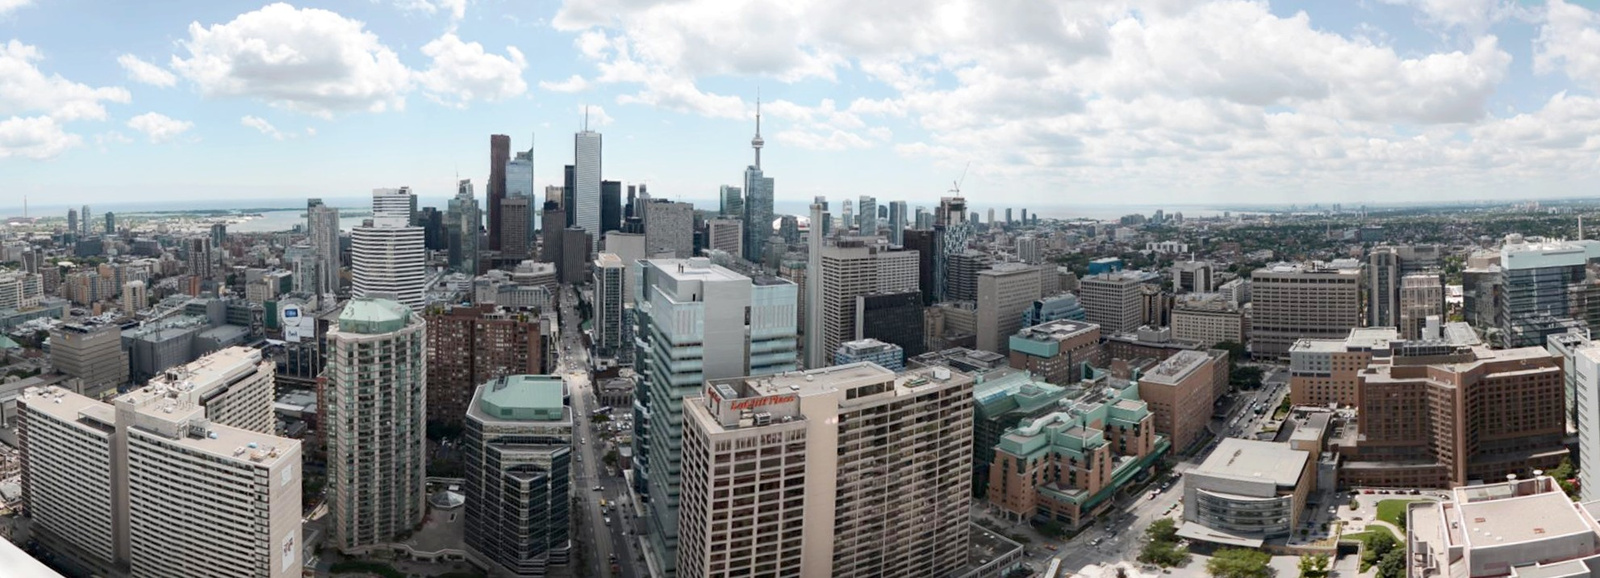 Toronto Downtown panorama